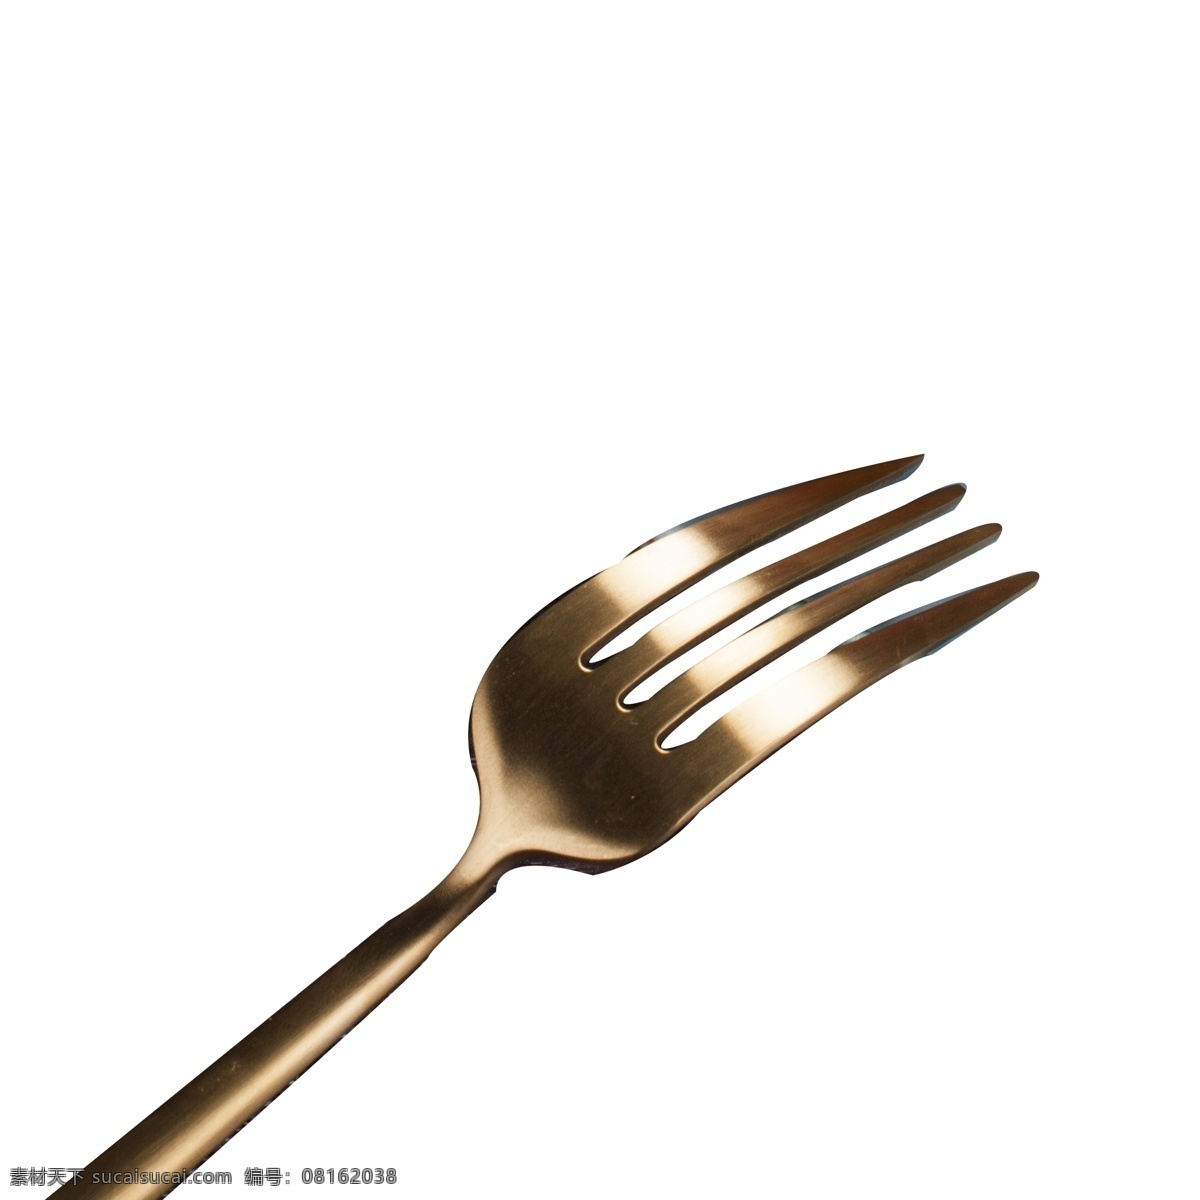 银灰色 刀叉 免 抠 图 叉子 西餐工具 厨房工具 时尚的刀具 厨房用品 工具 银灰色刀叉 免抠图